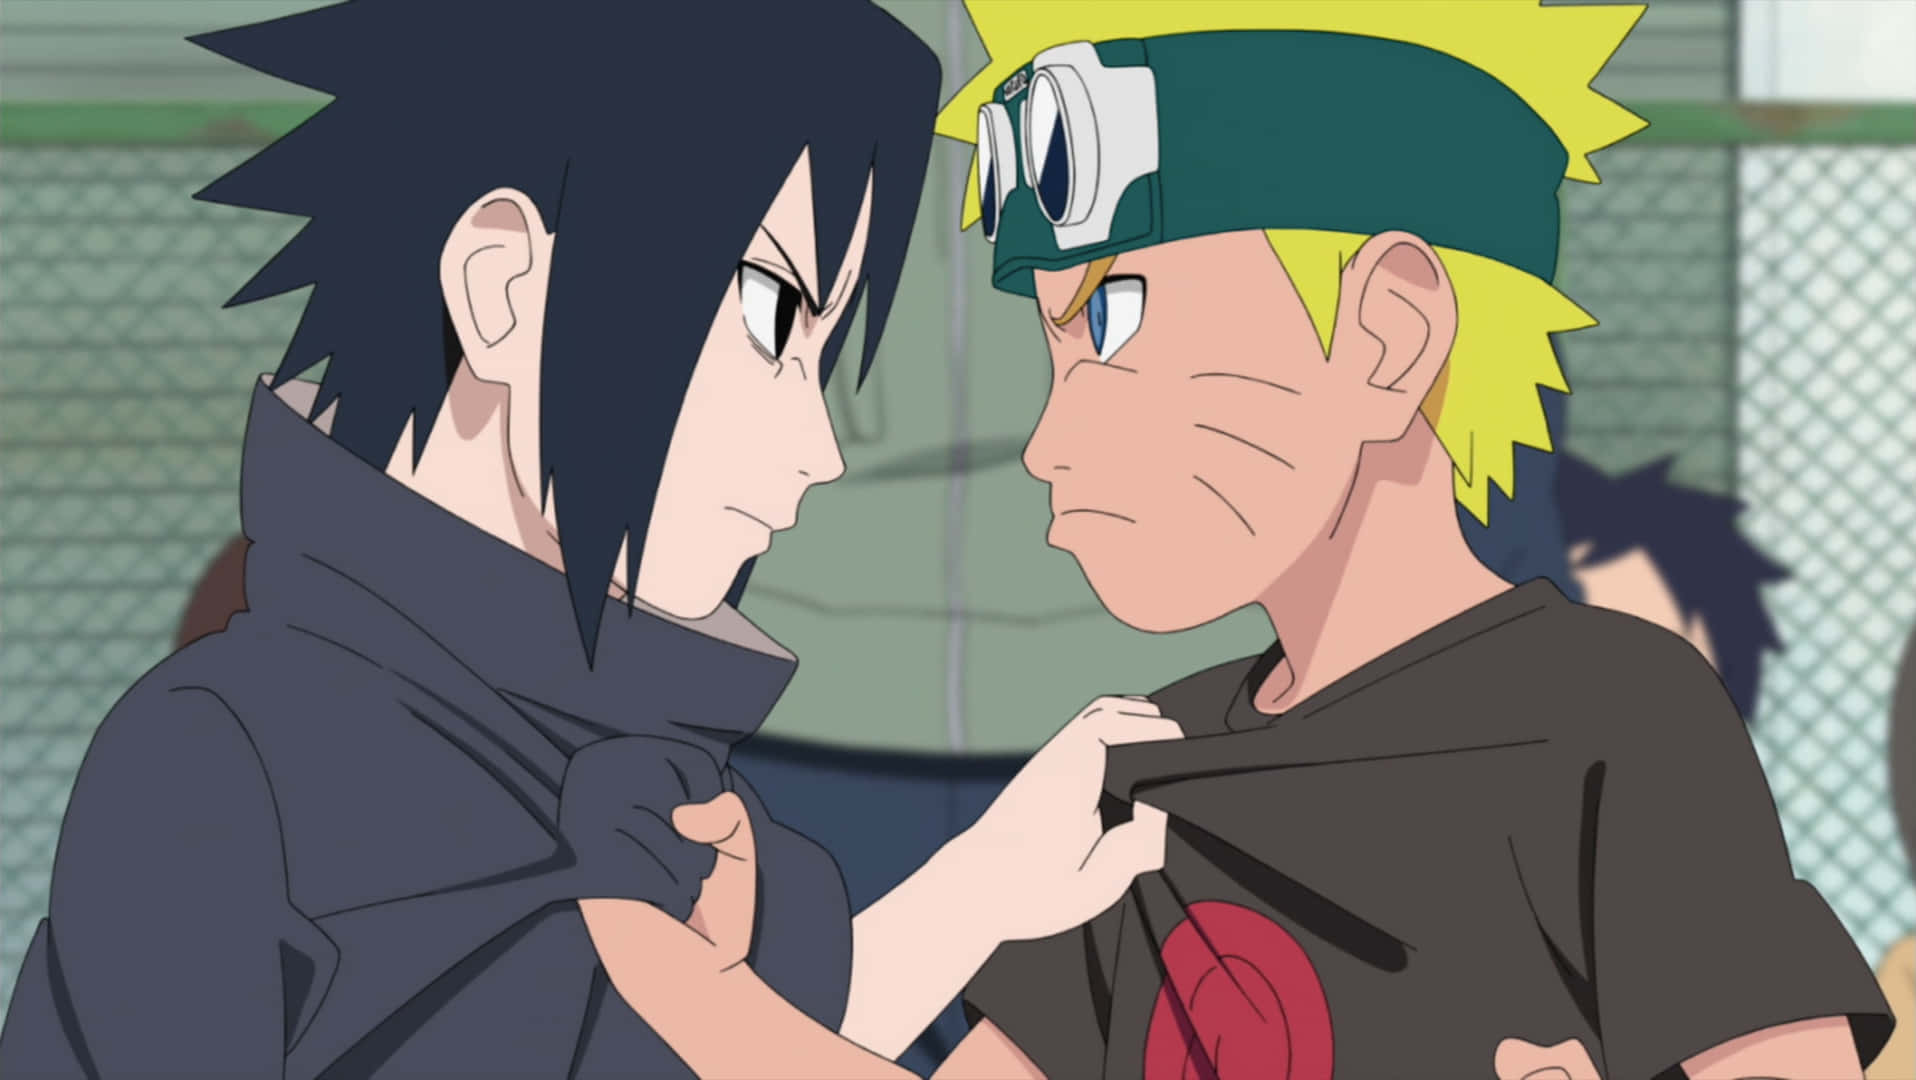 Imagensdo Sasuke E Naruto Capturando.